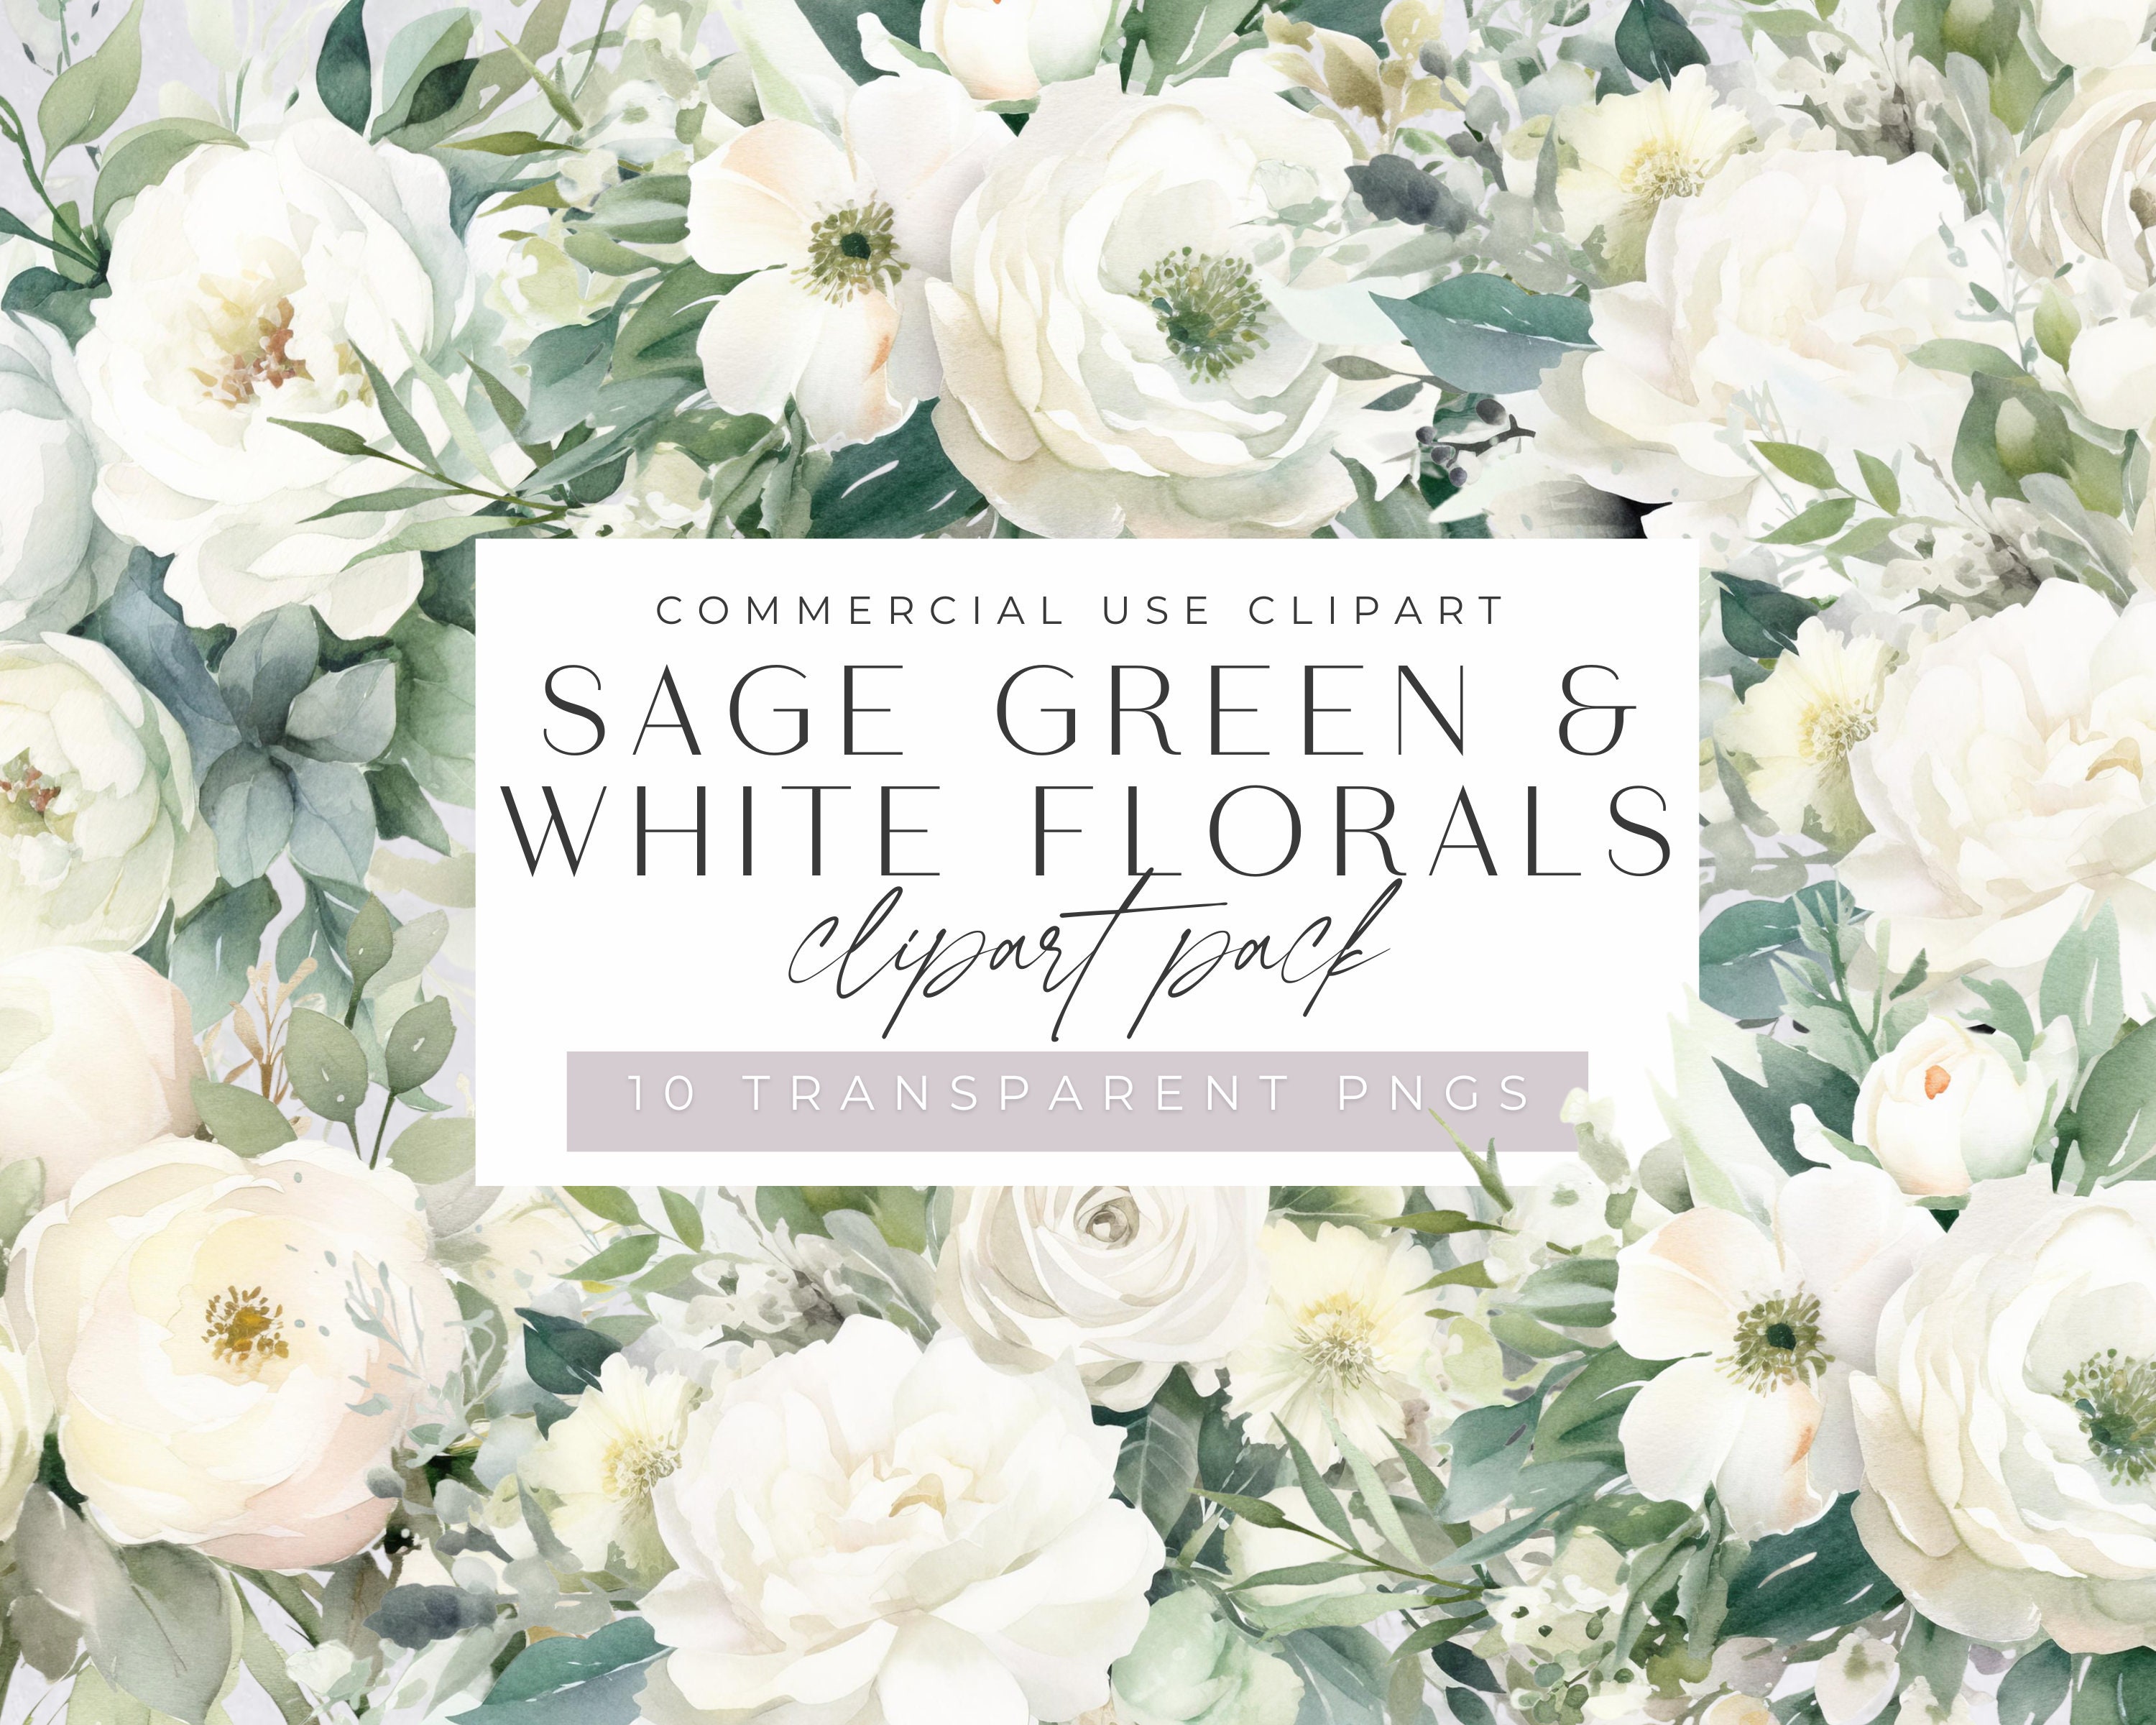 Florist Tape Roll Green 27m Floral Supplies Wedding Bouquet Stem